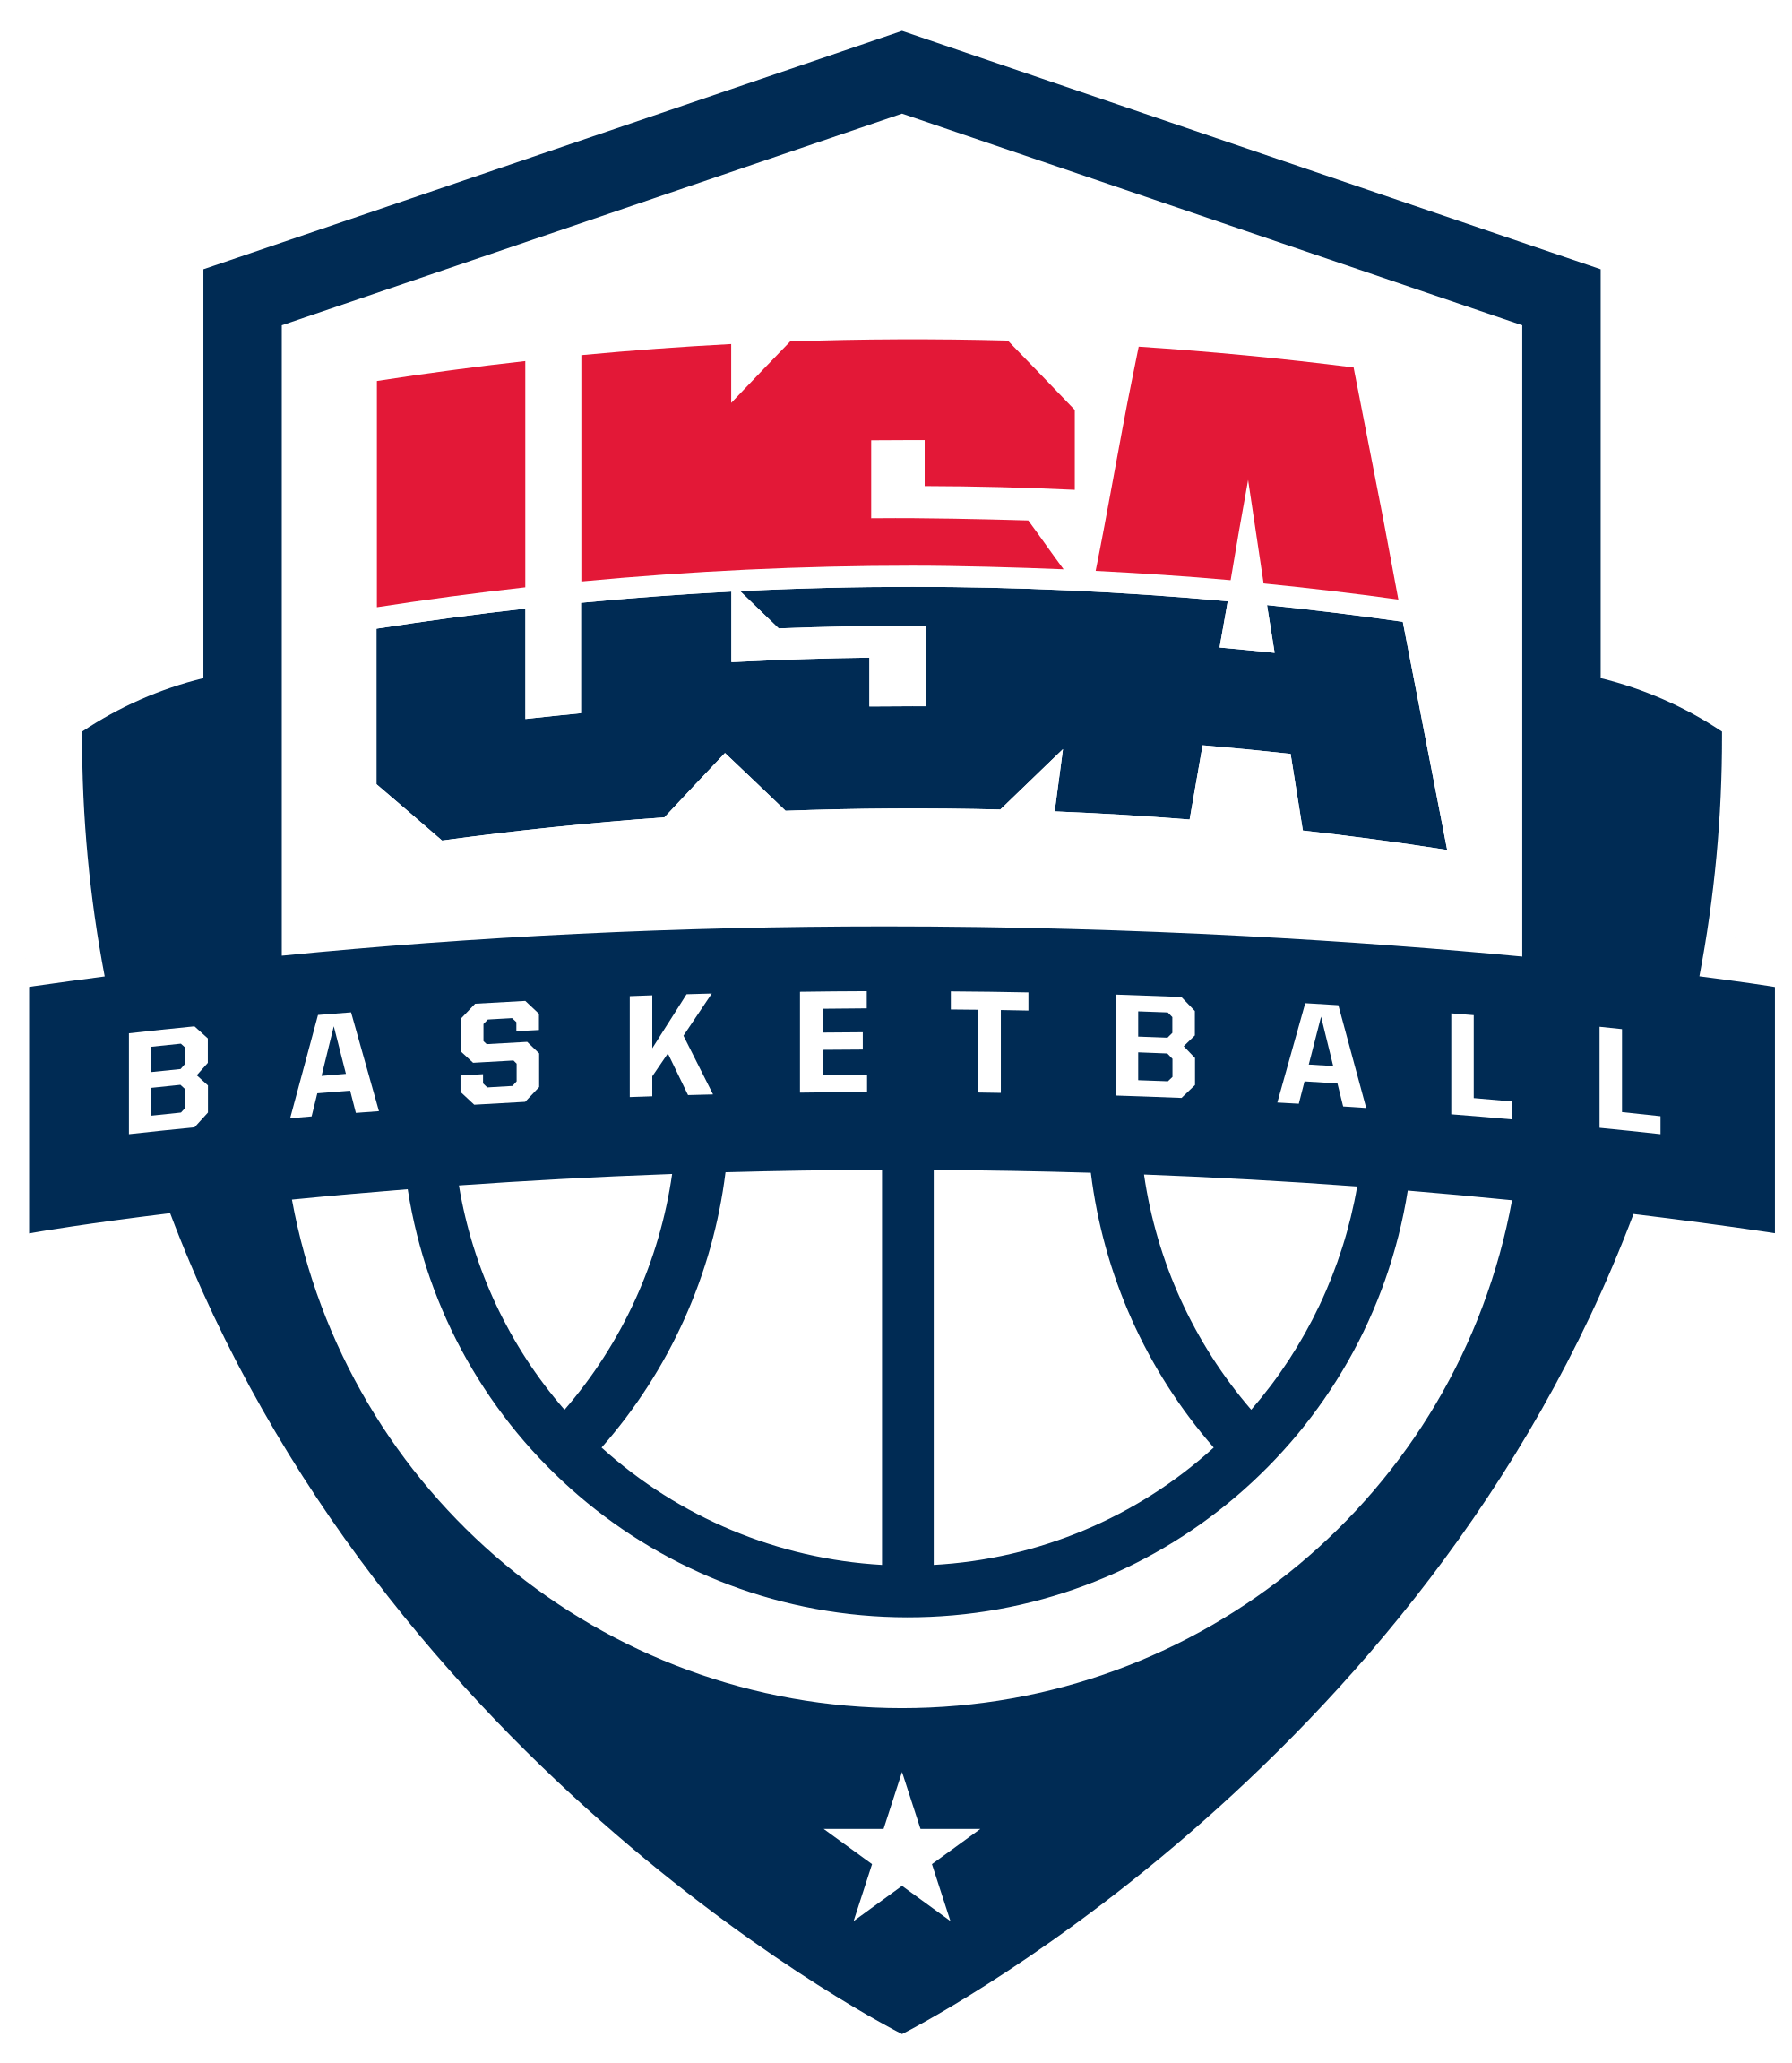 Basetball Logo - File:USA Basketball logo.svg - Wikimedia Commons